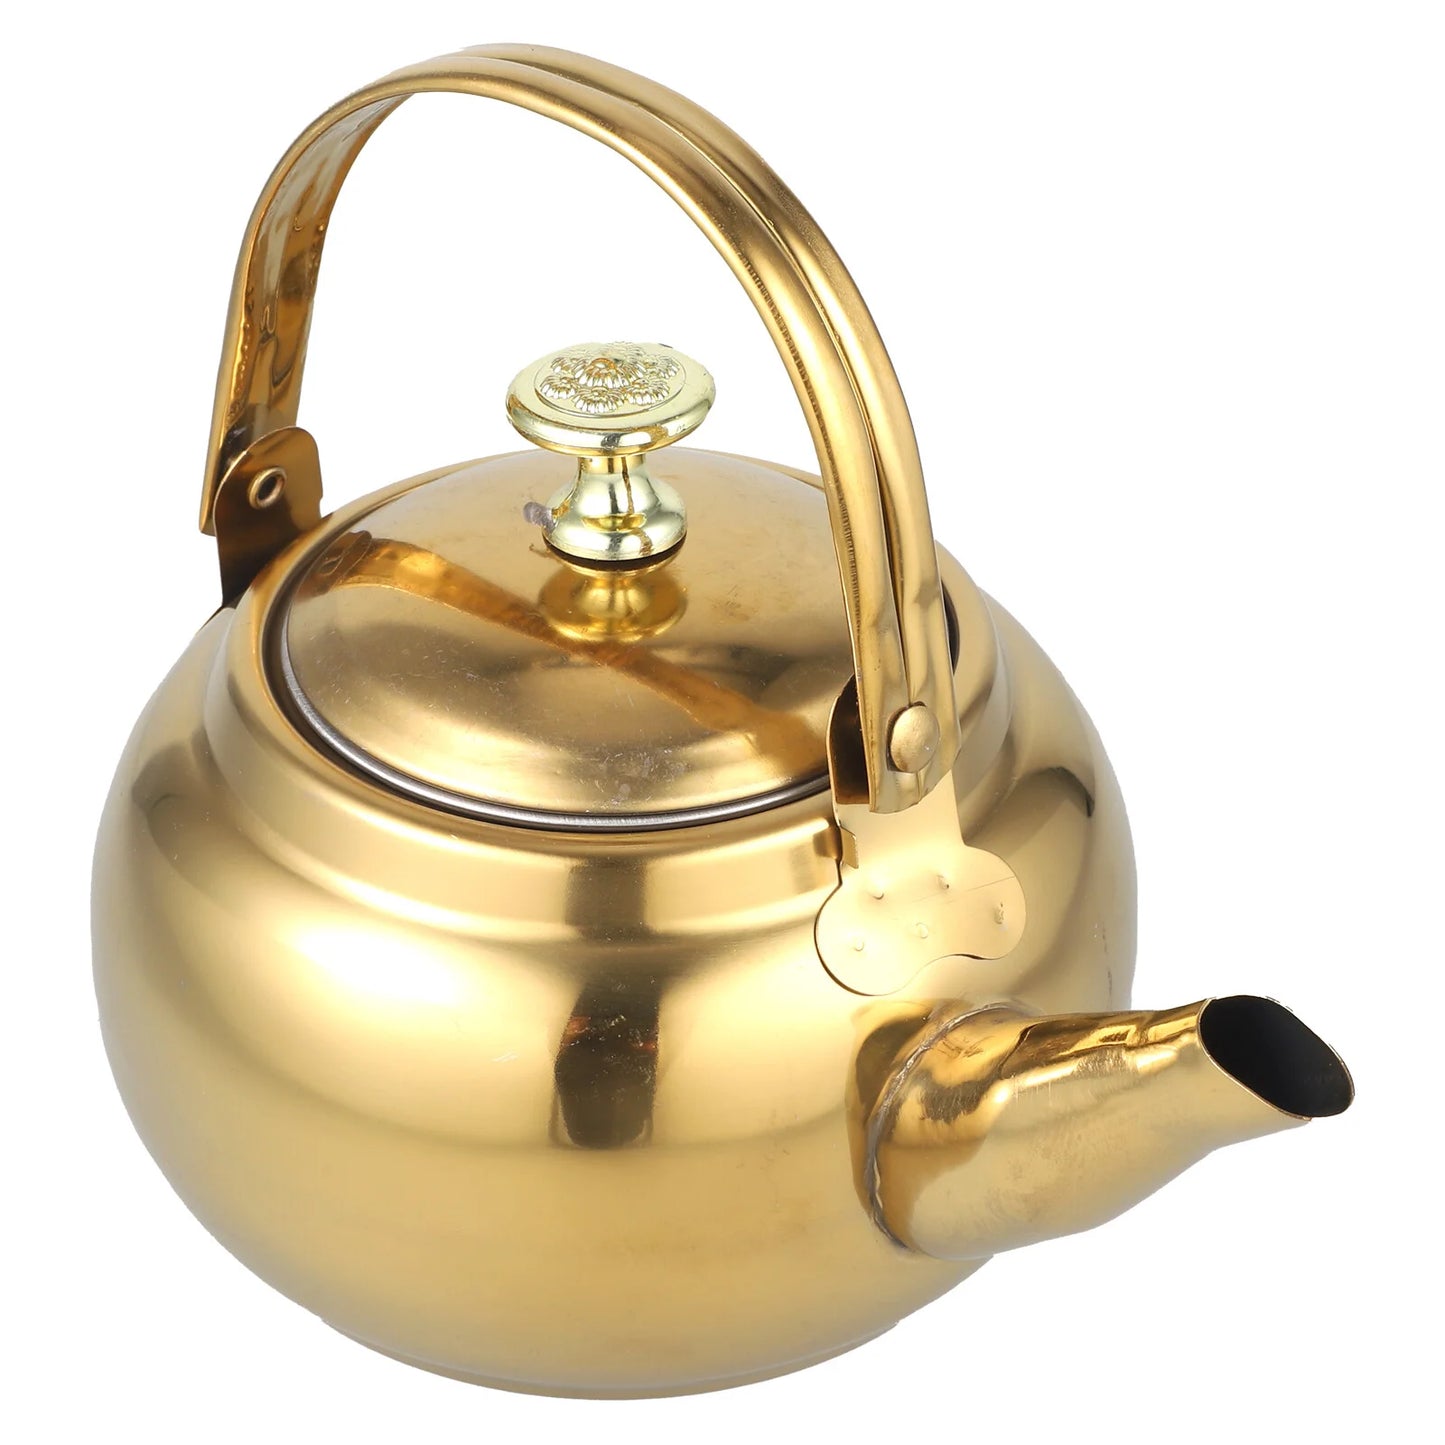 Golden teakettle, measuring 18x14.5cm